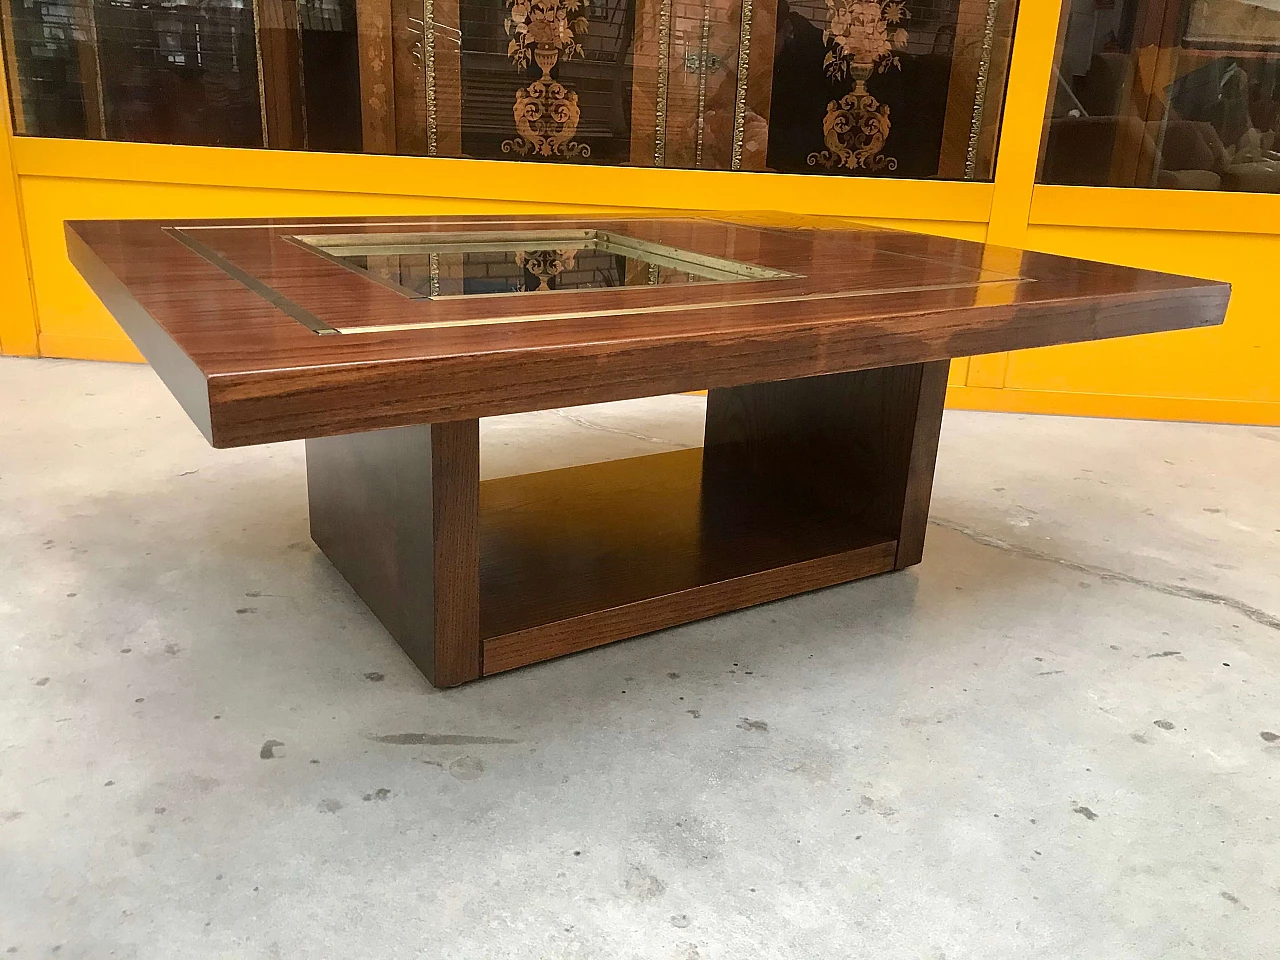 Tavolino da Caffè tipo Willy Rizzo in legno di rovere con specchio e profili di ottone, originale anni '60/'70 1226018